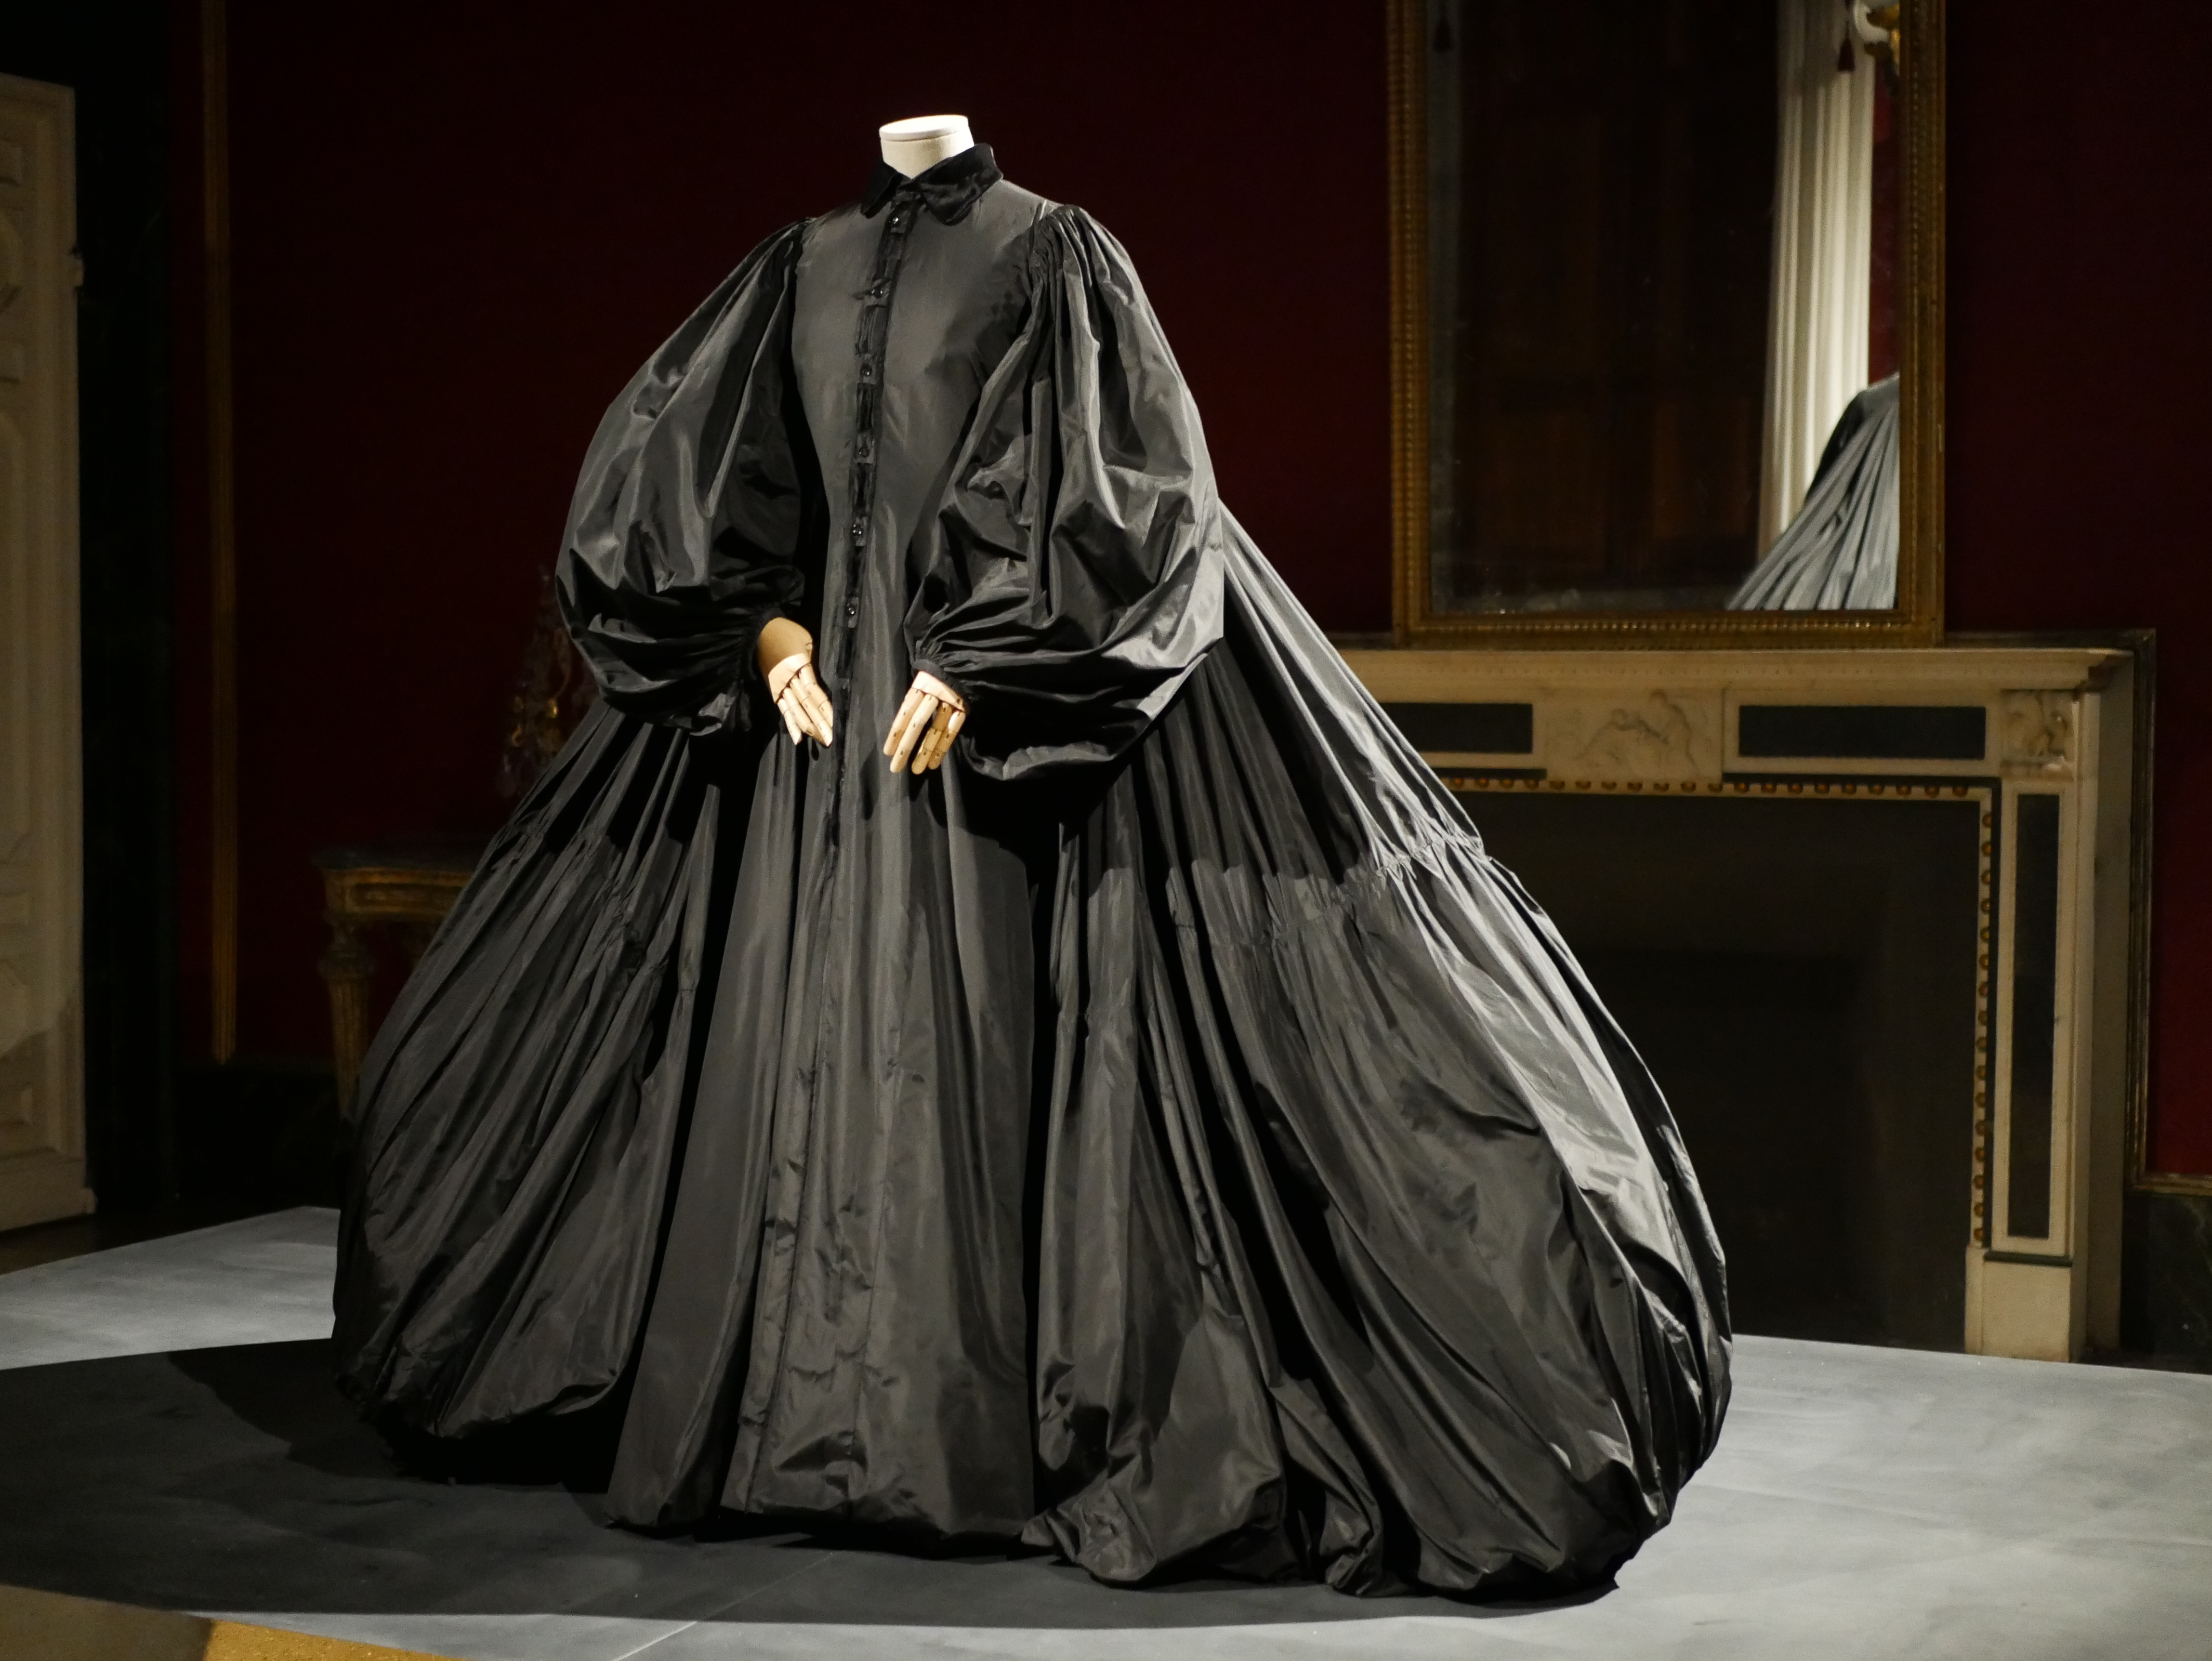  Animalia Fashion al Museo della Moda e del Costume a Palazzo Pitti di Firenze